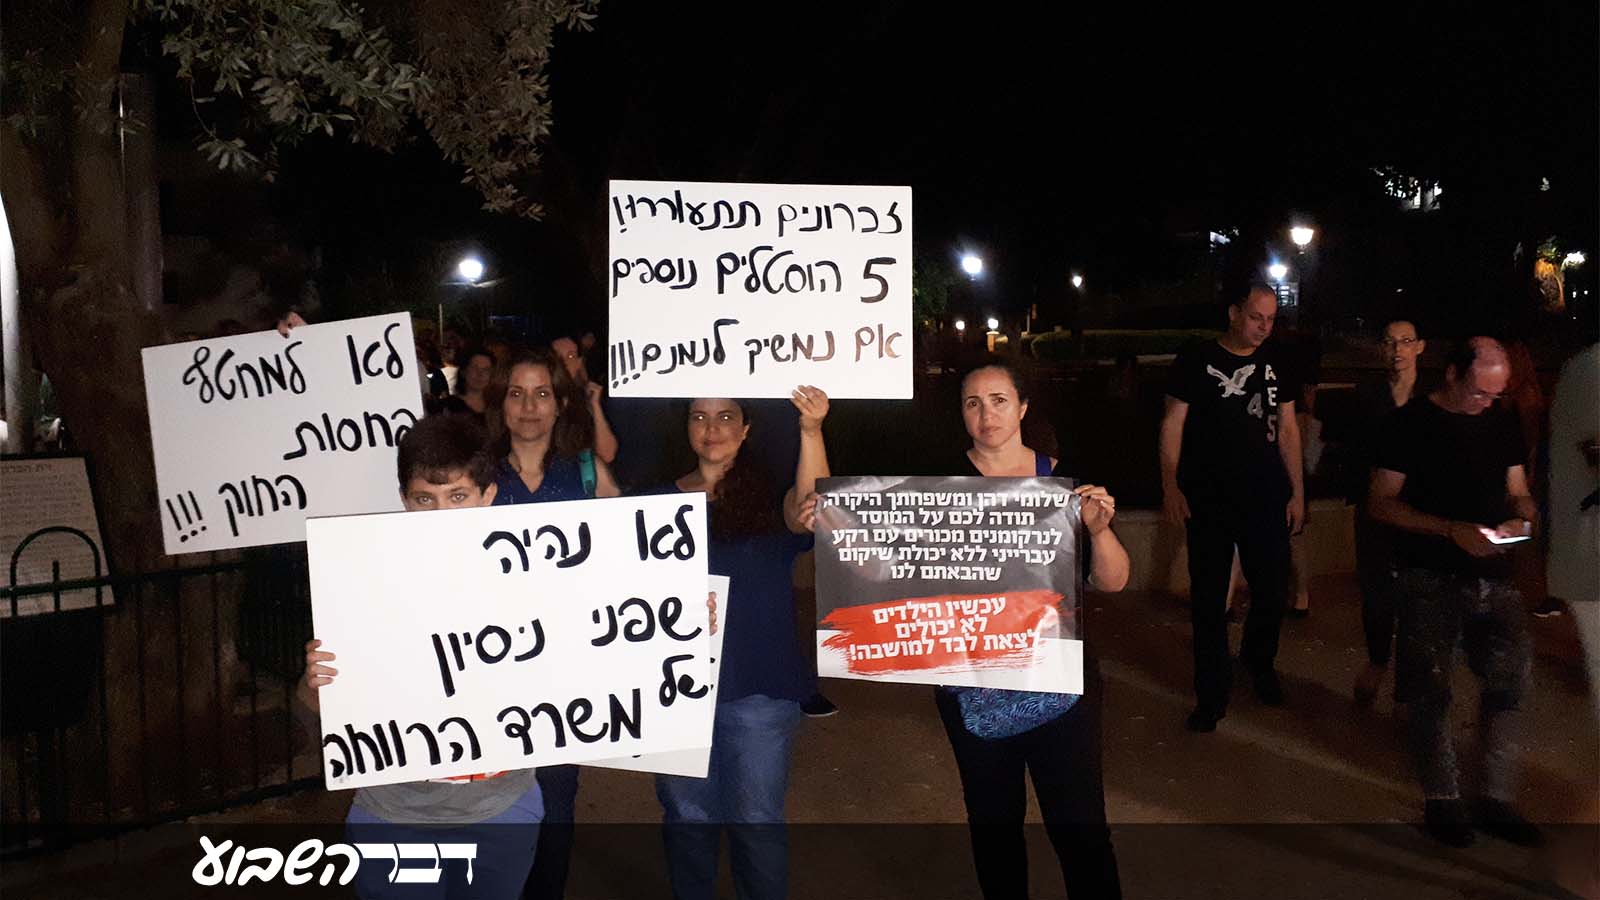 הפגנת תושבי שכונת גבעת עדן בזכרון יעקב נגד פתיחת הוסטל לשיקום מכורים לסמים (צילום: מיכל רוזן)